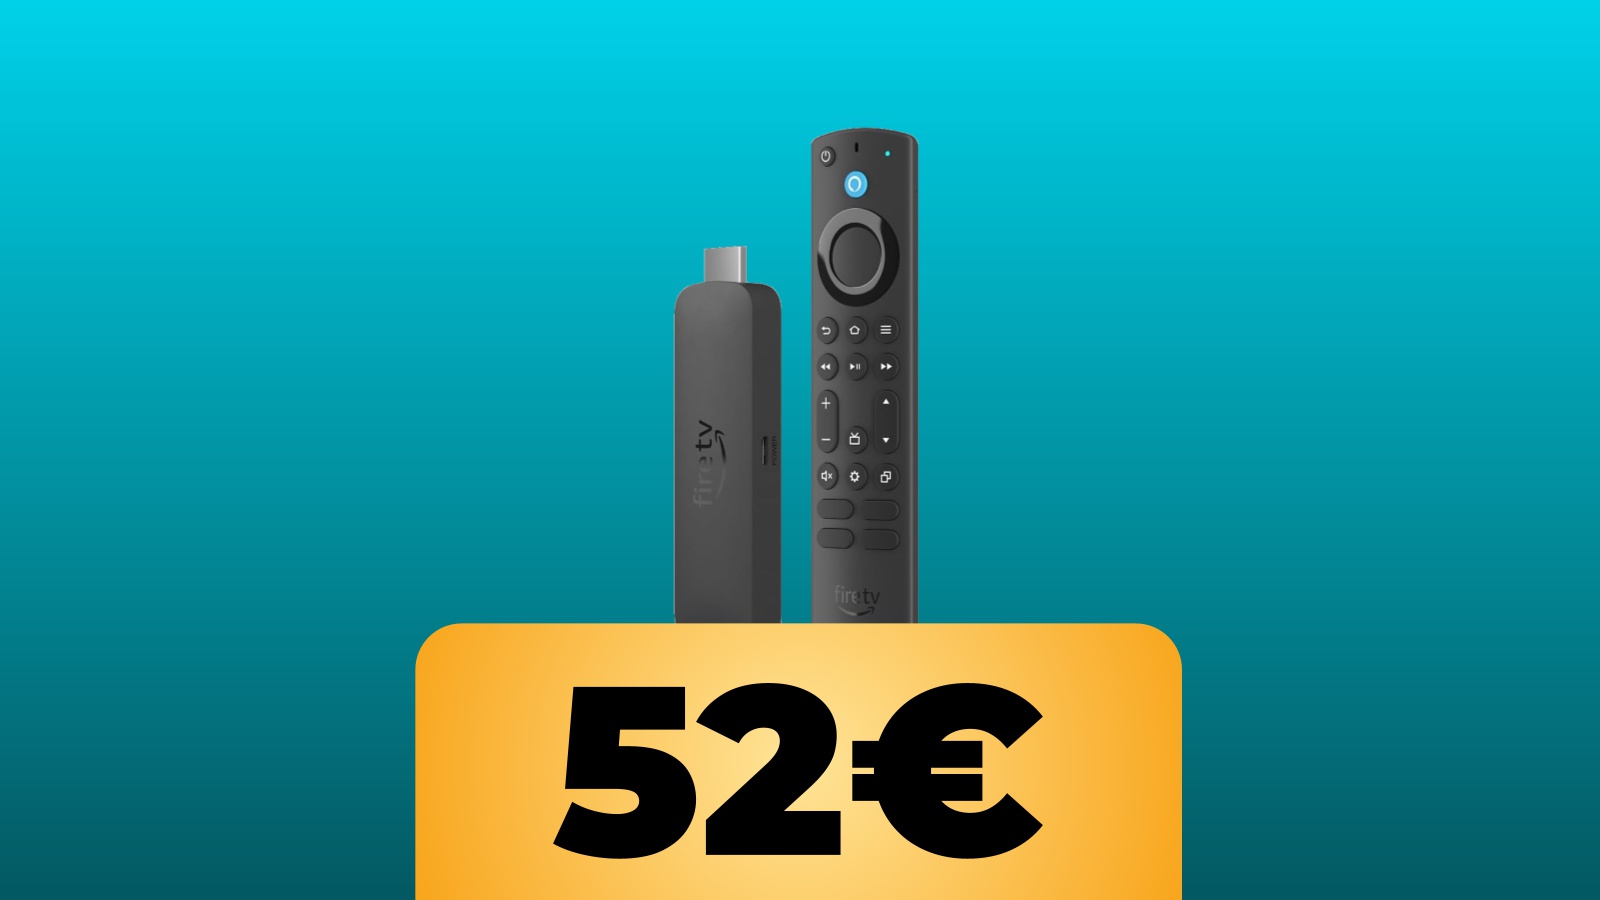 Fire TV Stick 4K Max è in sconto con le offerte di Amazon Italia